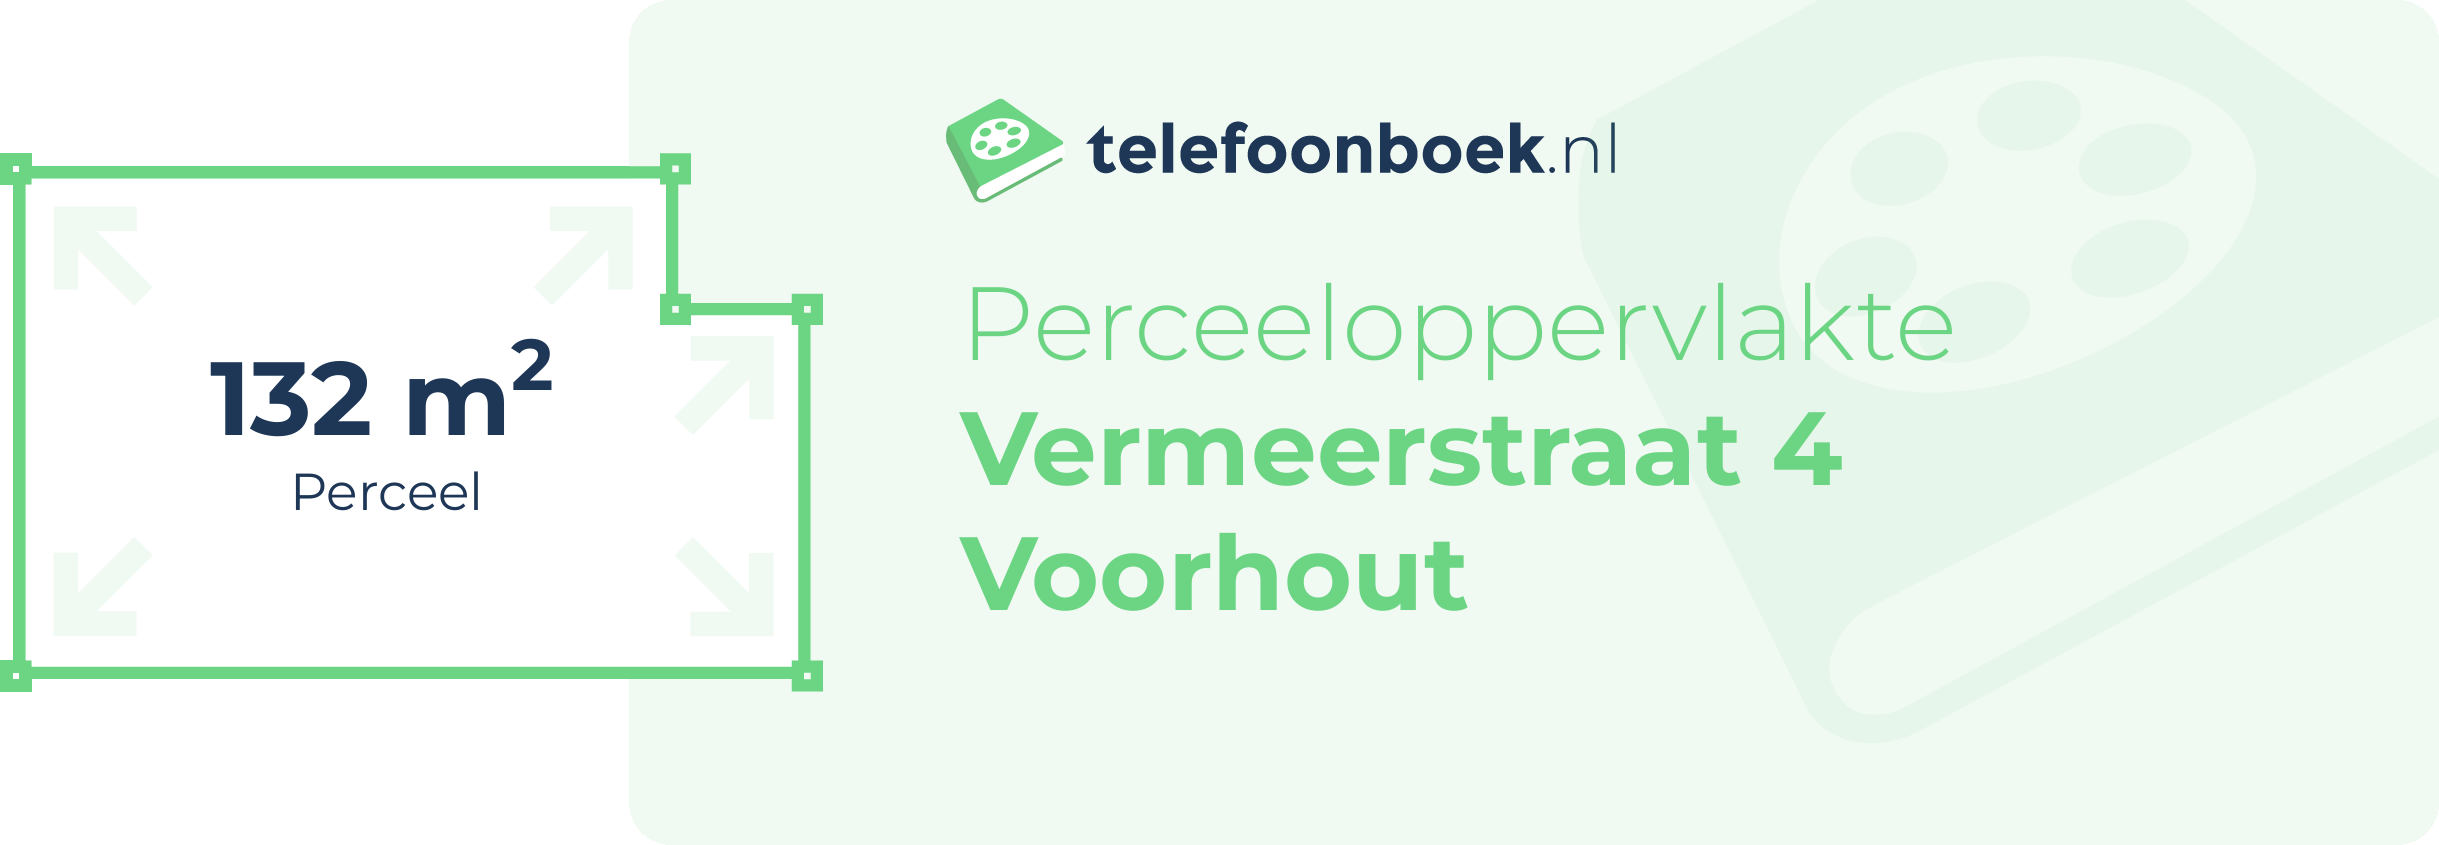 Perceeloppervlakte Vermeerstraat 4 Voorhout